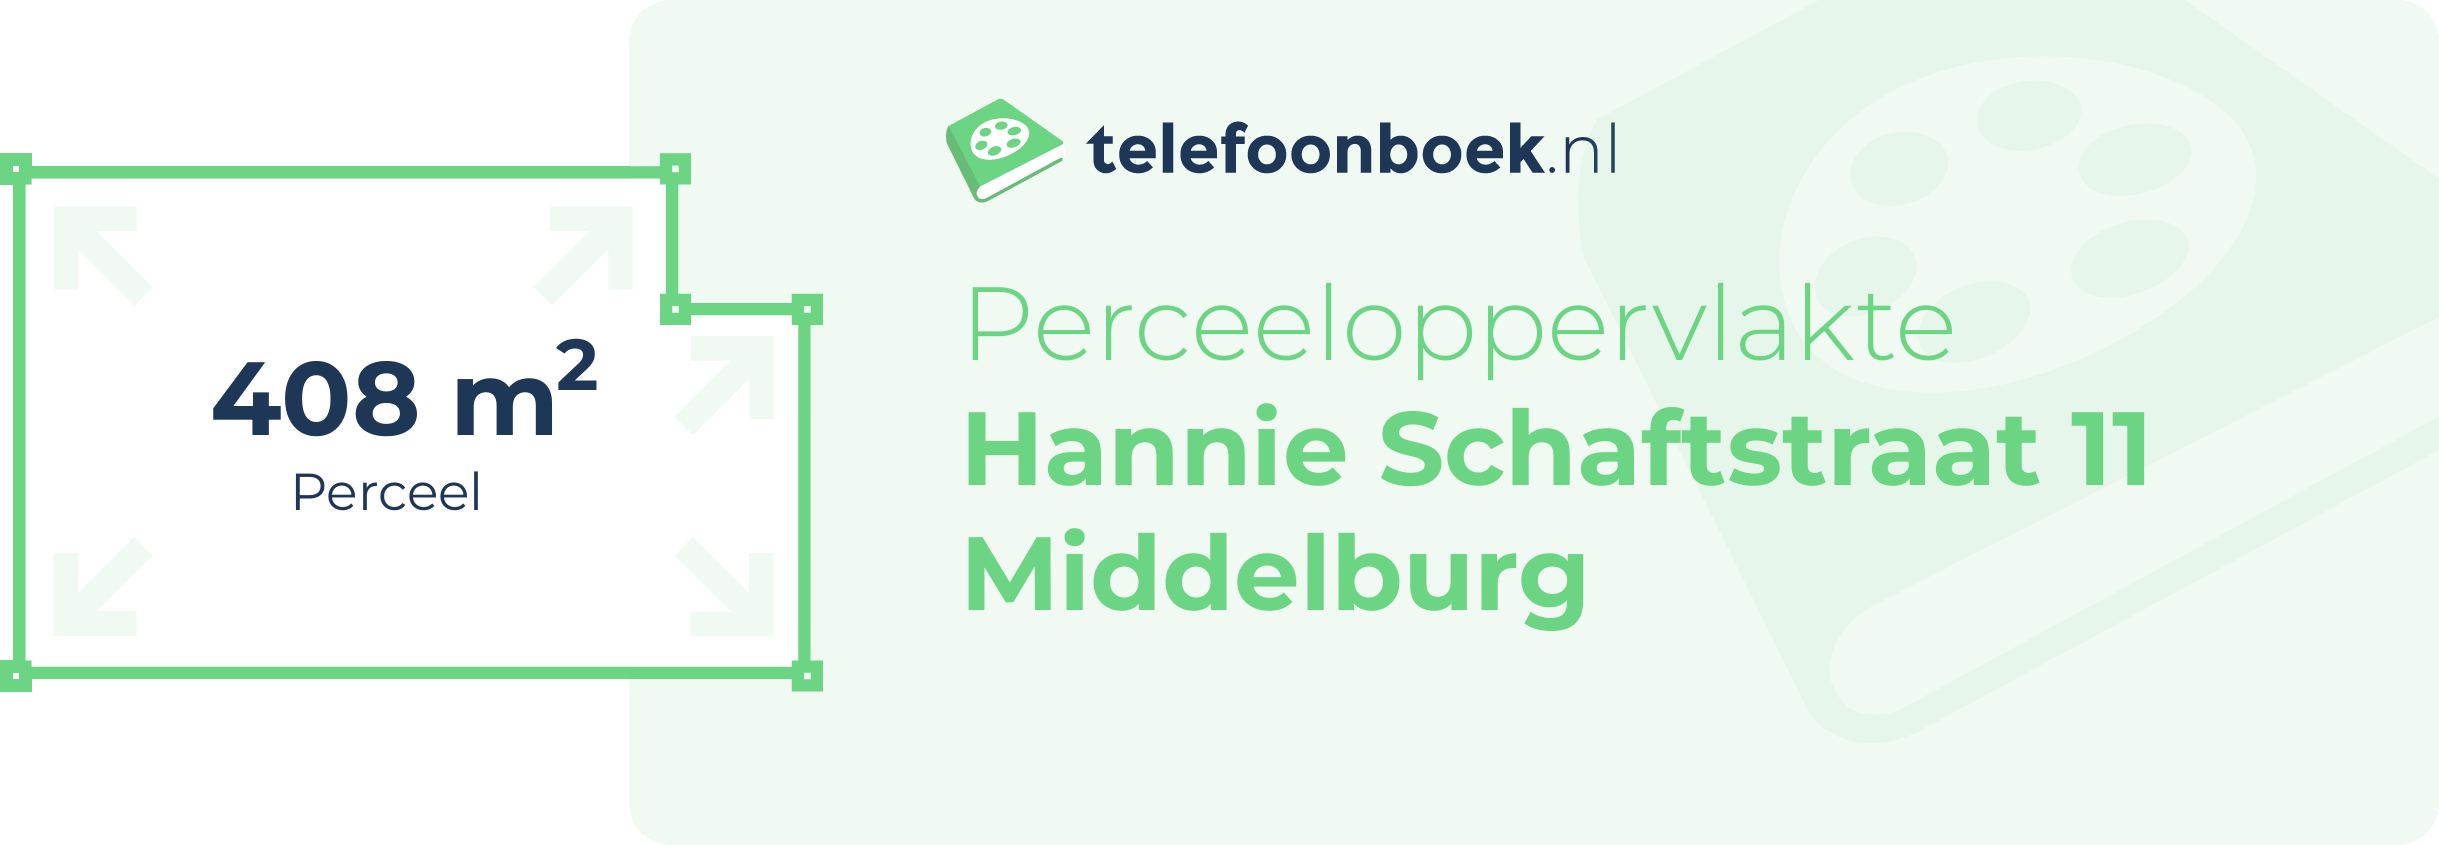 Perceeloppervlakte Hannie Schaftstraat 11 Middelburg